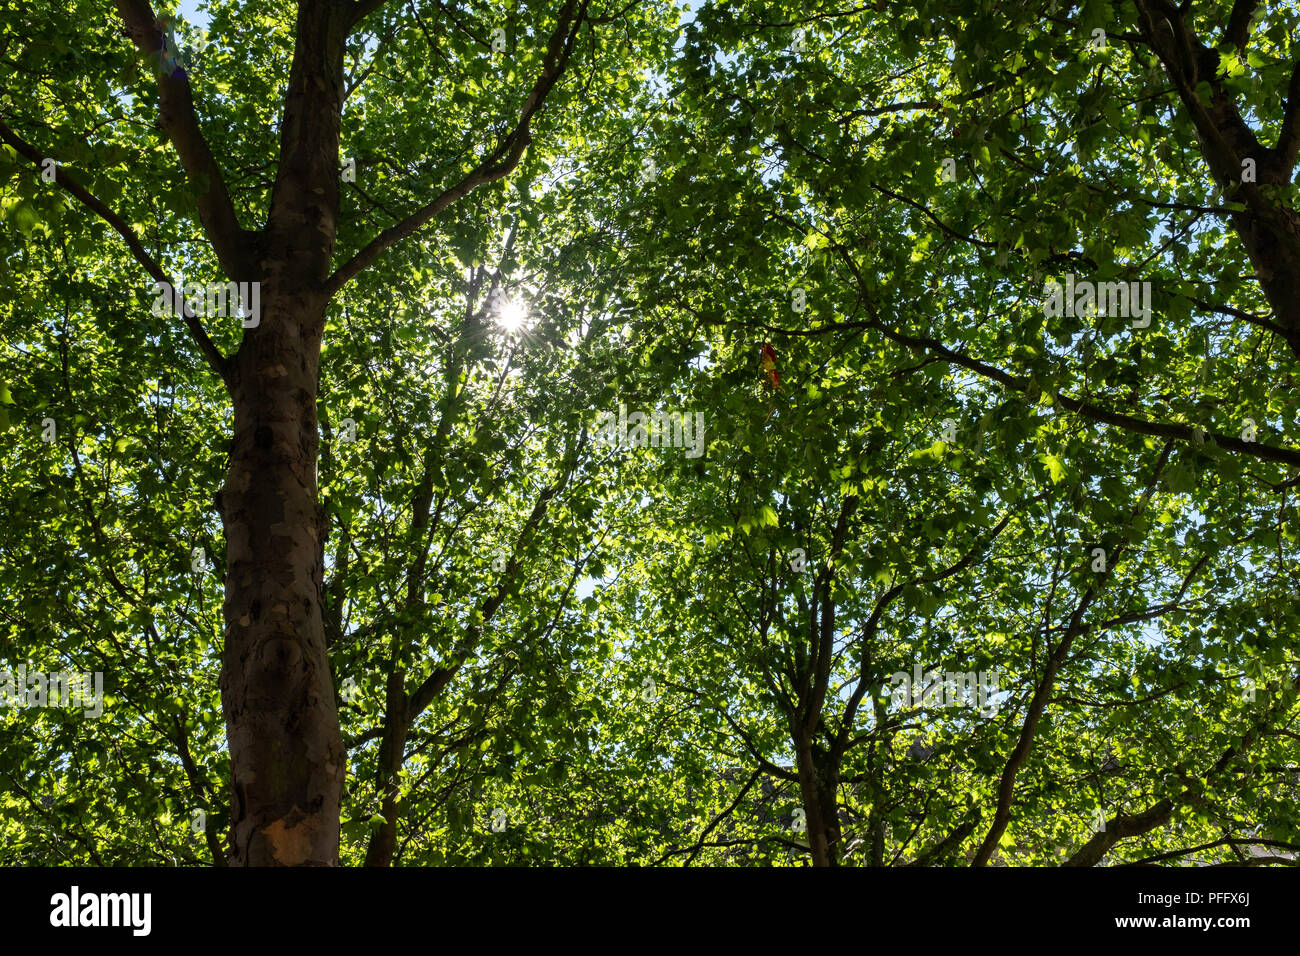 Image de Kingston Upon Hull UK City of Culture 2017. Le soleil brille à travers les branches d'arbres et de feuilles vertes. Banque D'Images